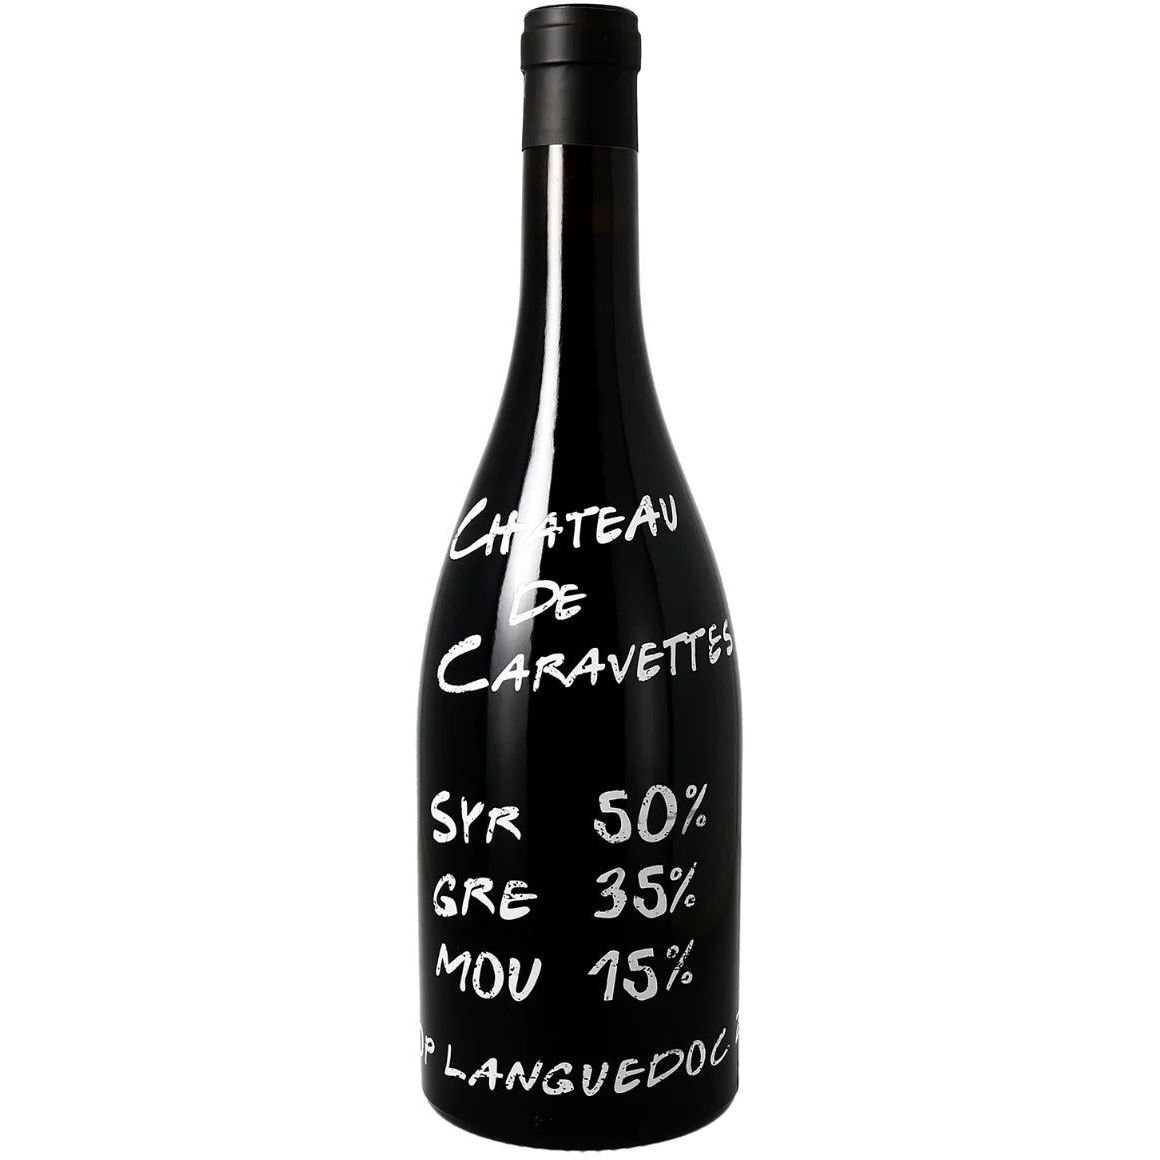 Вино Chateau de Caravette Syrah Grenache Mourvedre AOP Languedoc красное сухое 0.75 л - фото 1